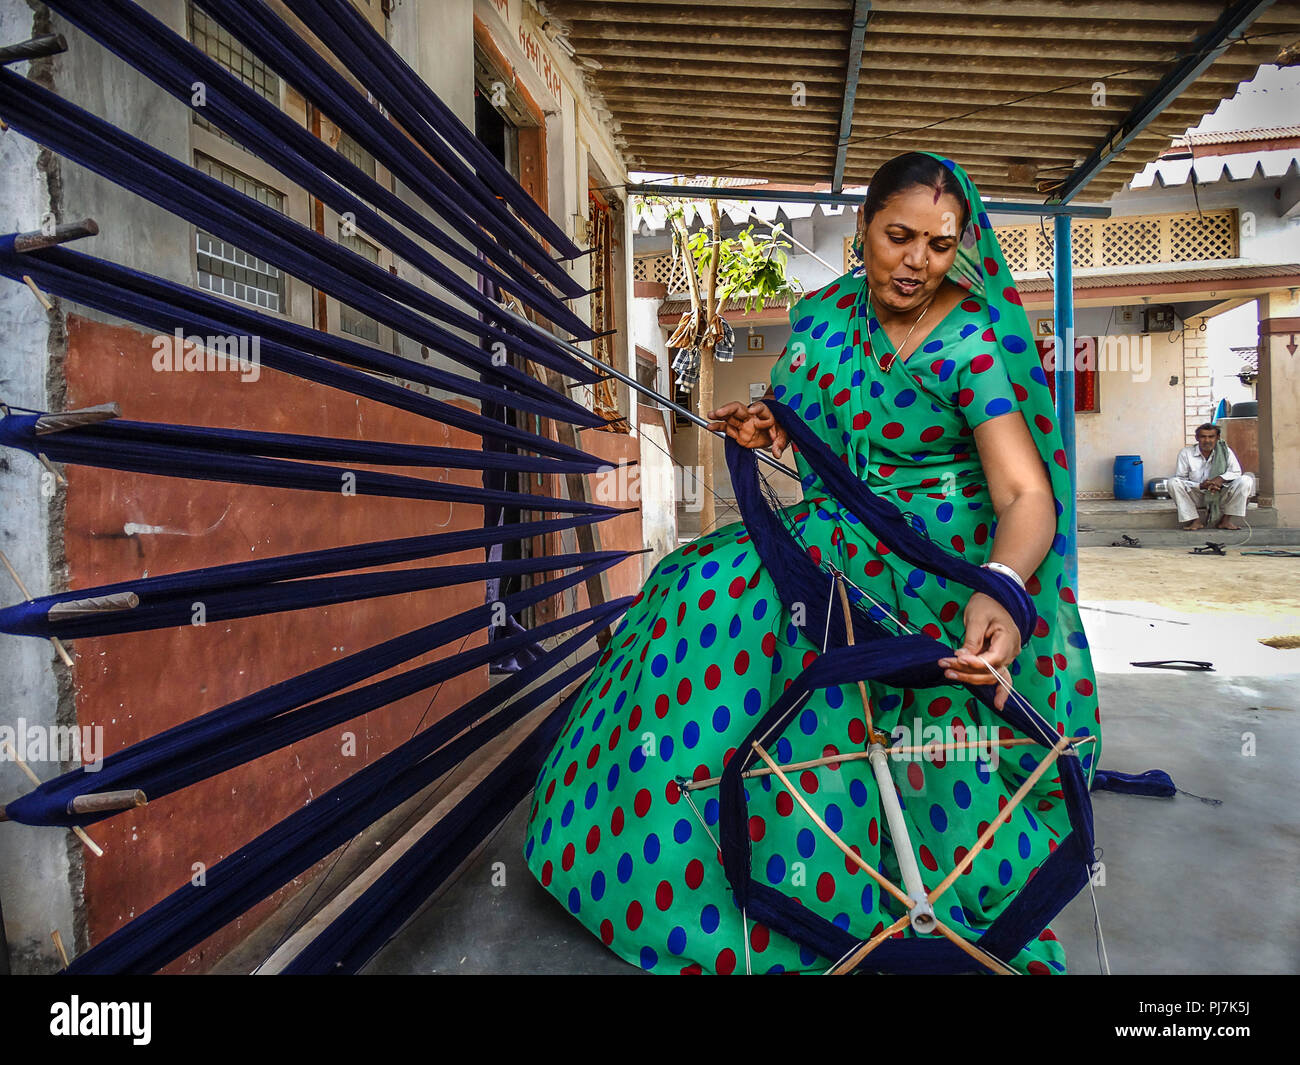 Travail indien femme occupée à tisser Banque D'Images